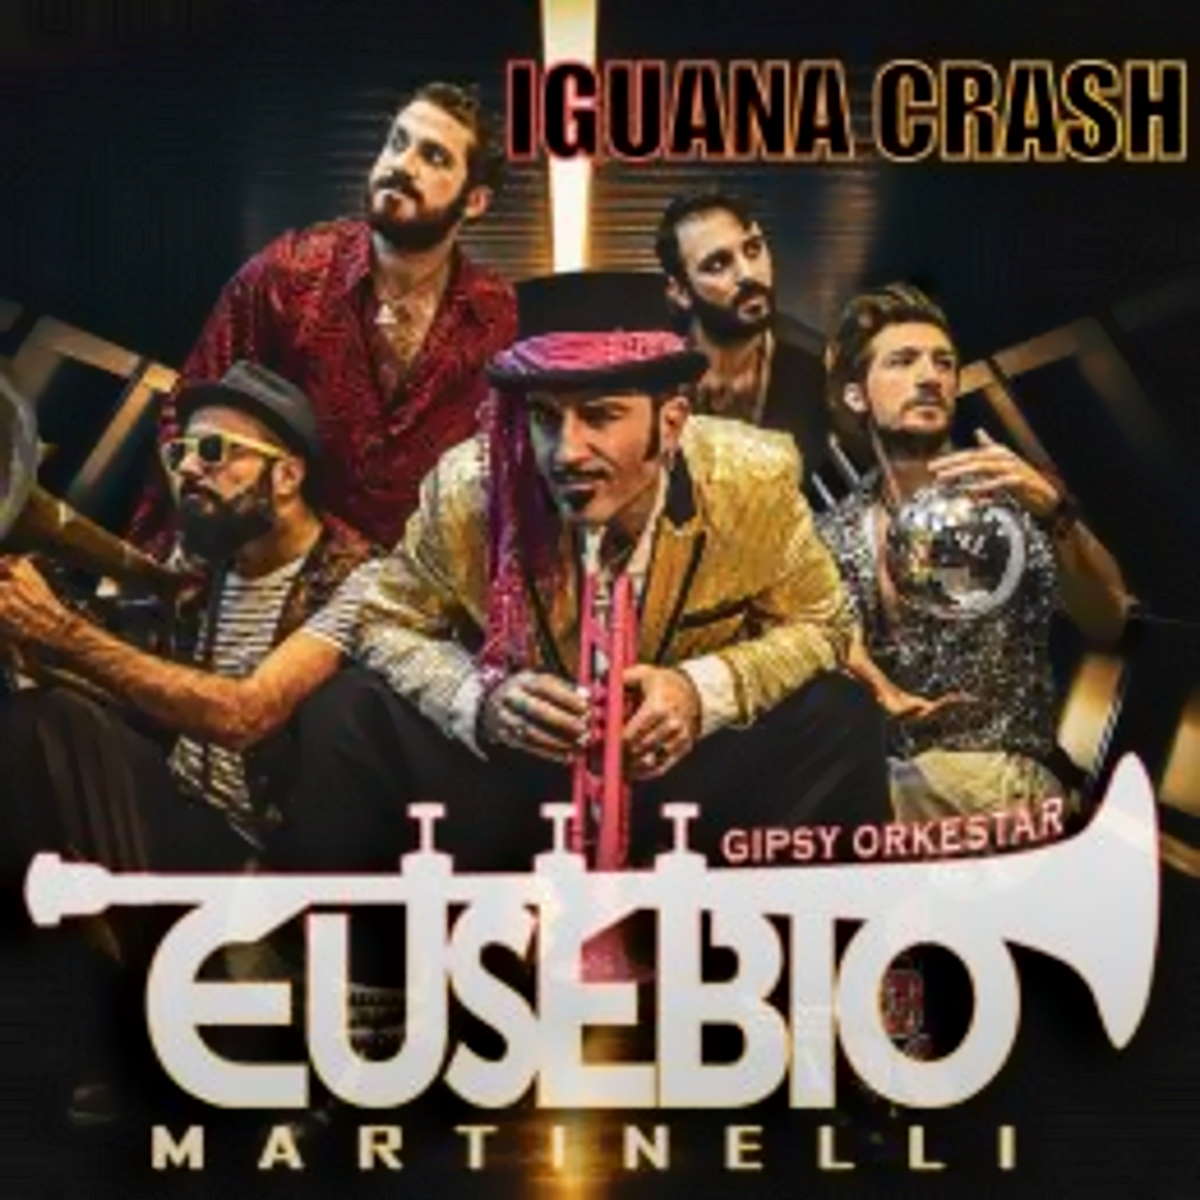 EUSEBIO MARTINELLI GIPSY ORKESTAR, “Iguana Crash” è il singolo del rinnovamento dopo 10 anni di concerti in Italia e Europa